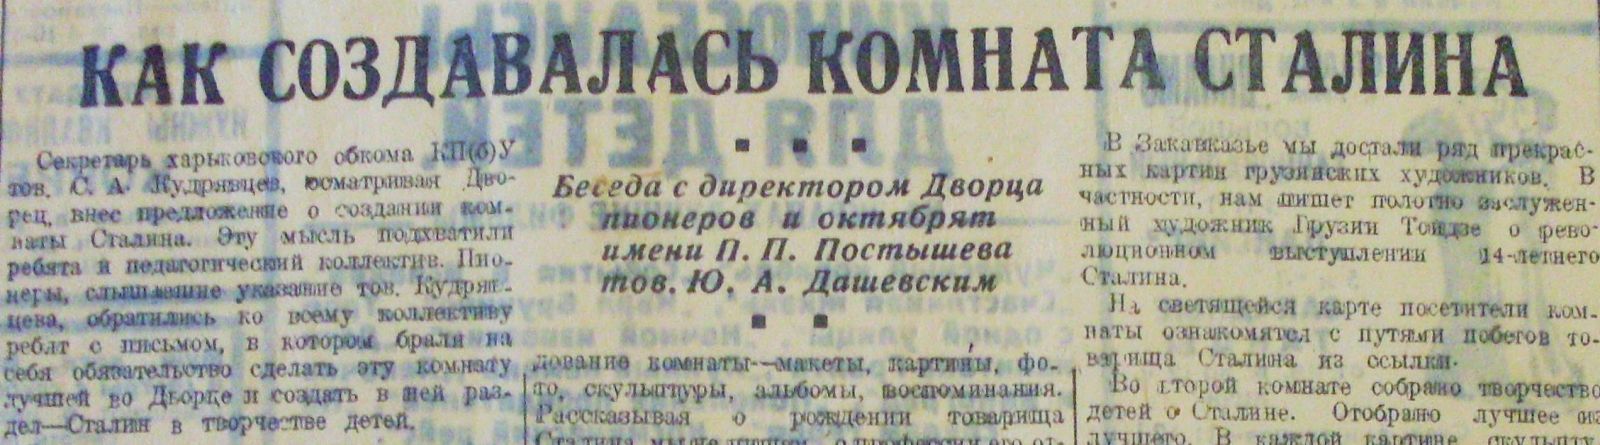 Ще у січні 1937-го Юрій Дашевський спілкувався з кореспондентом газети, а вже у липні — зі слідчими НКВД